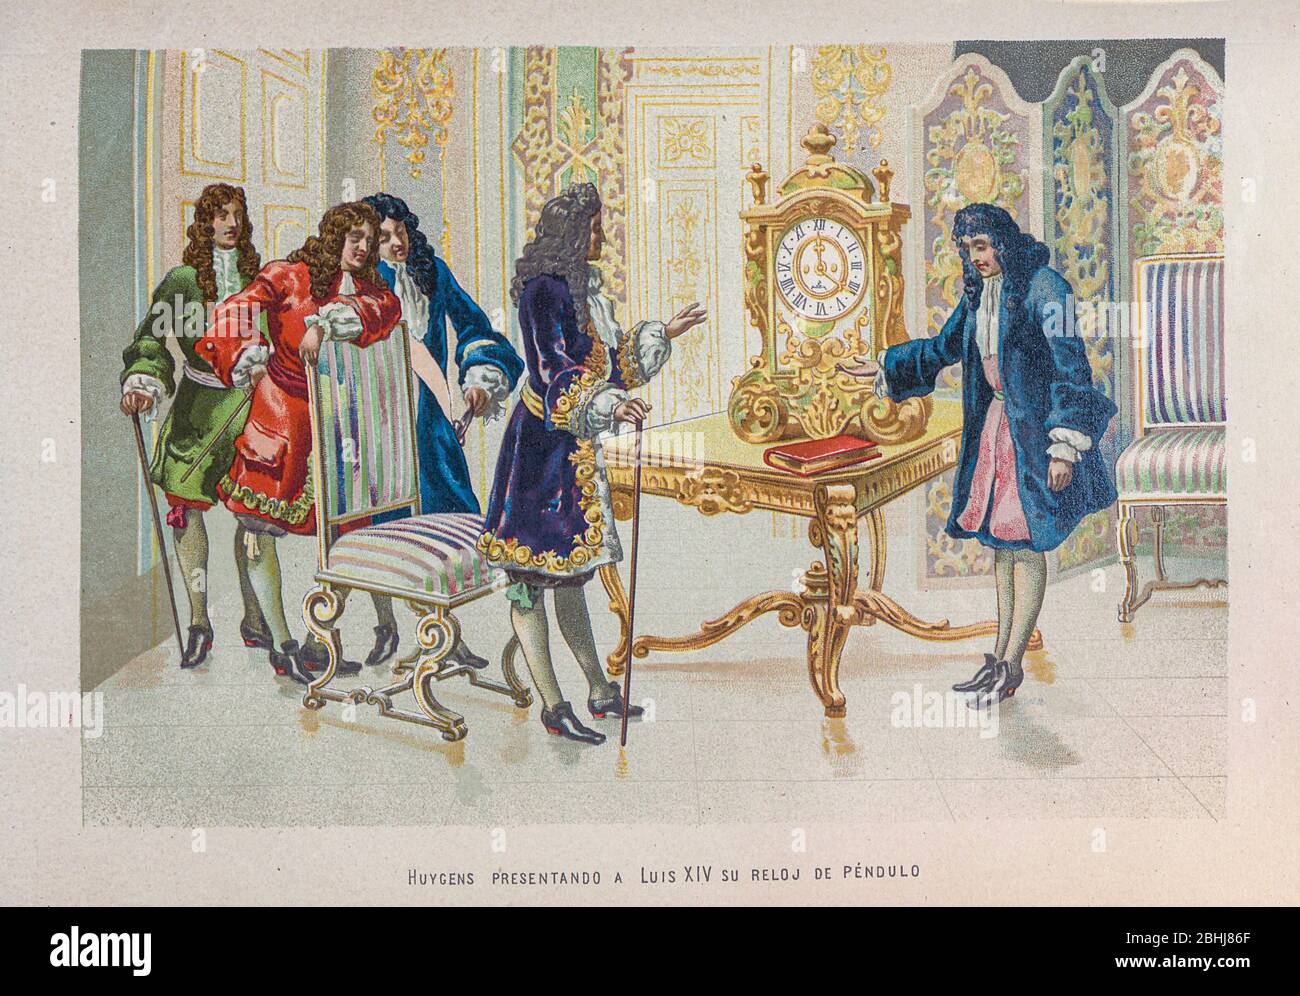 Christiaan Huygens [Cristian Huygens] auch Hugenius oder Huyghens; (14. April 1629 – 8. Juli 1695), war ein niederländischer Physiker, Mathematiker, Astronom und Erfinder, der weithin als einer der größten Wissenschaftler aller Zeiten und eine wichtige Figur in der wissenschaftlichen Revolution angesehen wird. In der Physik, Huygens machte bahnbrechende Beiträge in Optik und Mechanik, während als Astronom ist er vor allem bekannt für seine Studien über die Ringe des Saturn und die Entdeckung seines Mondes Titan. Als Erfinder verbesserte er das Design des Teleskops mit der Erfindung des Huygenschen Okular. Seine berühmteste inVenti Stockfoto